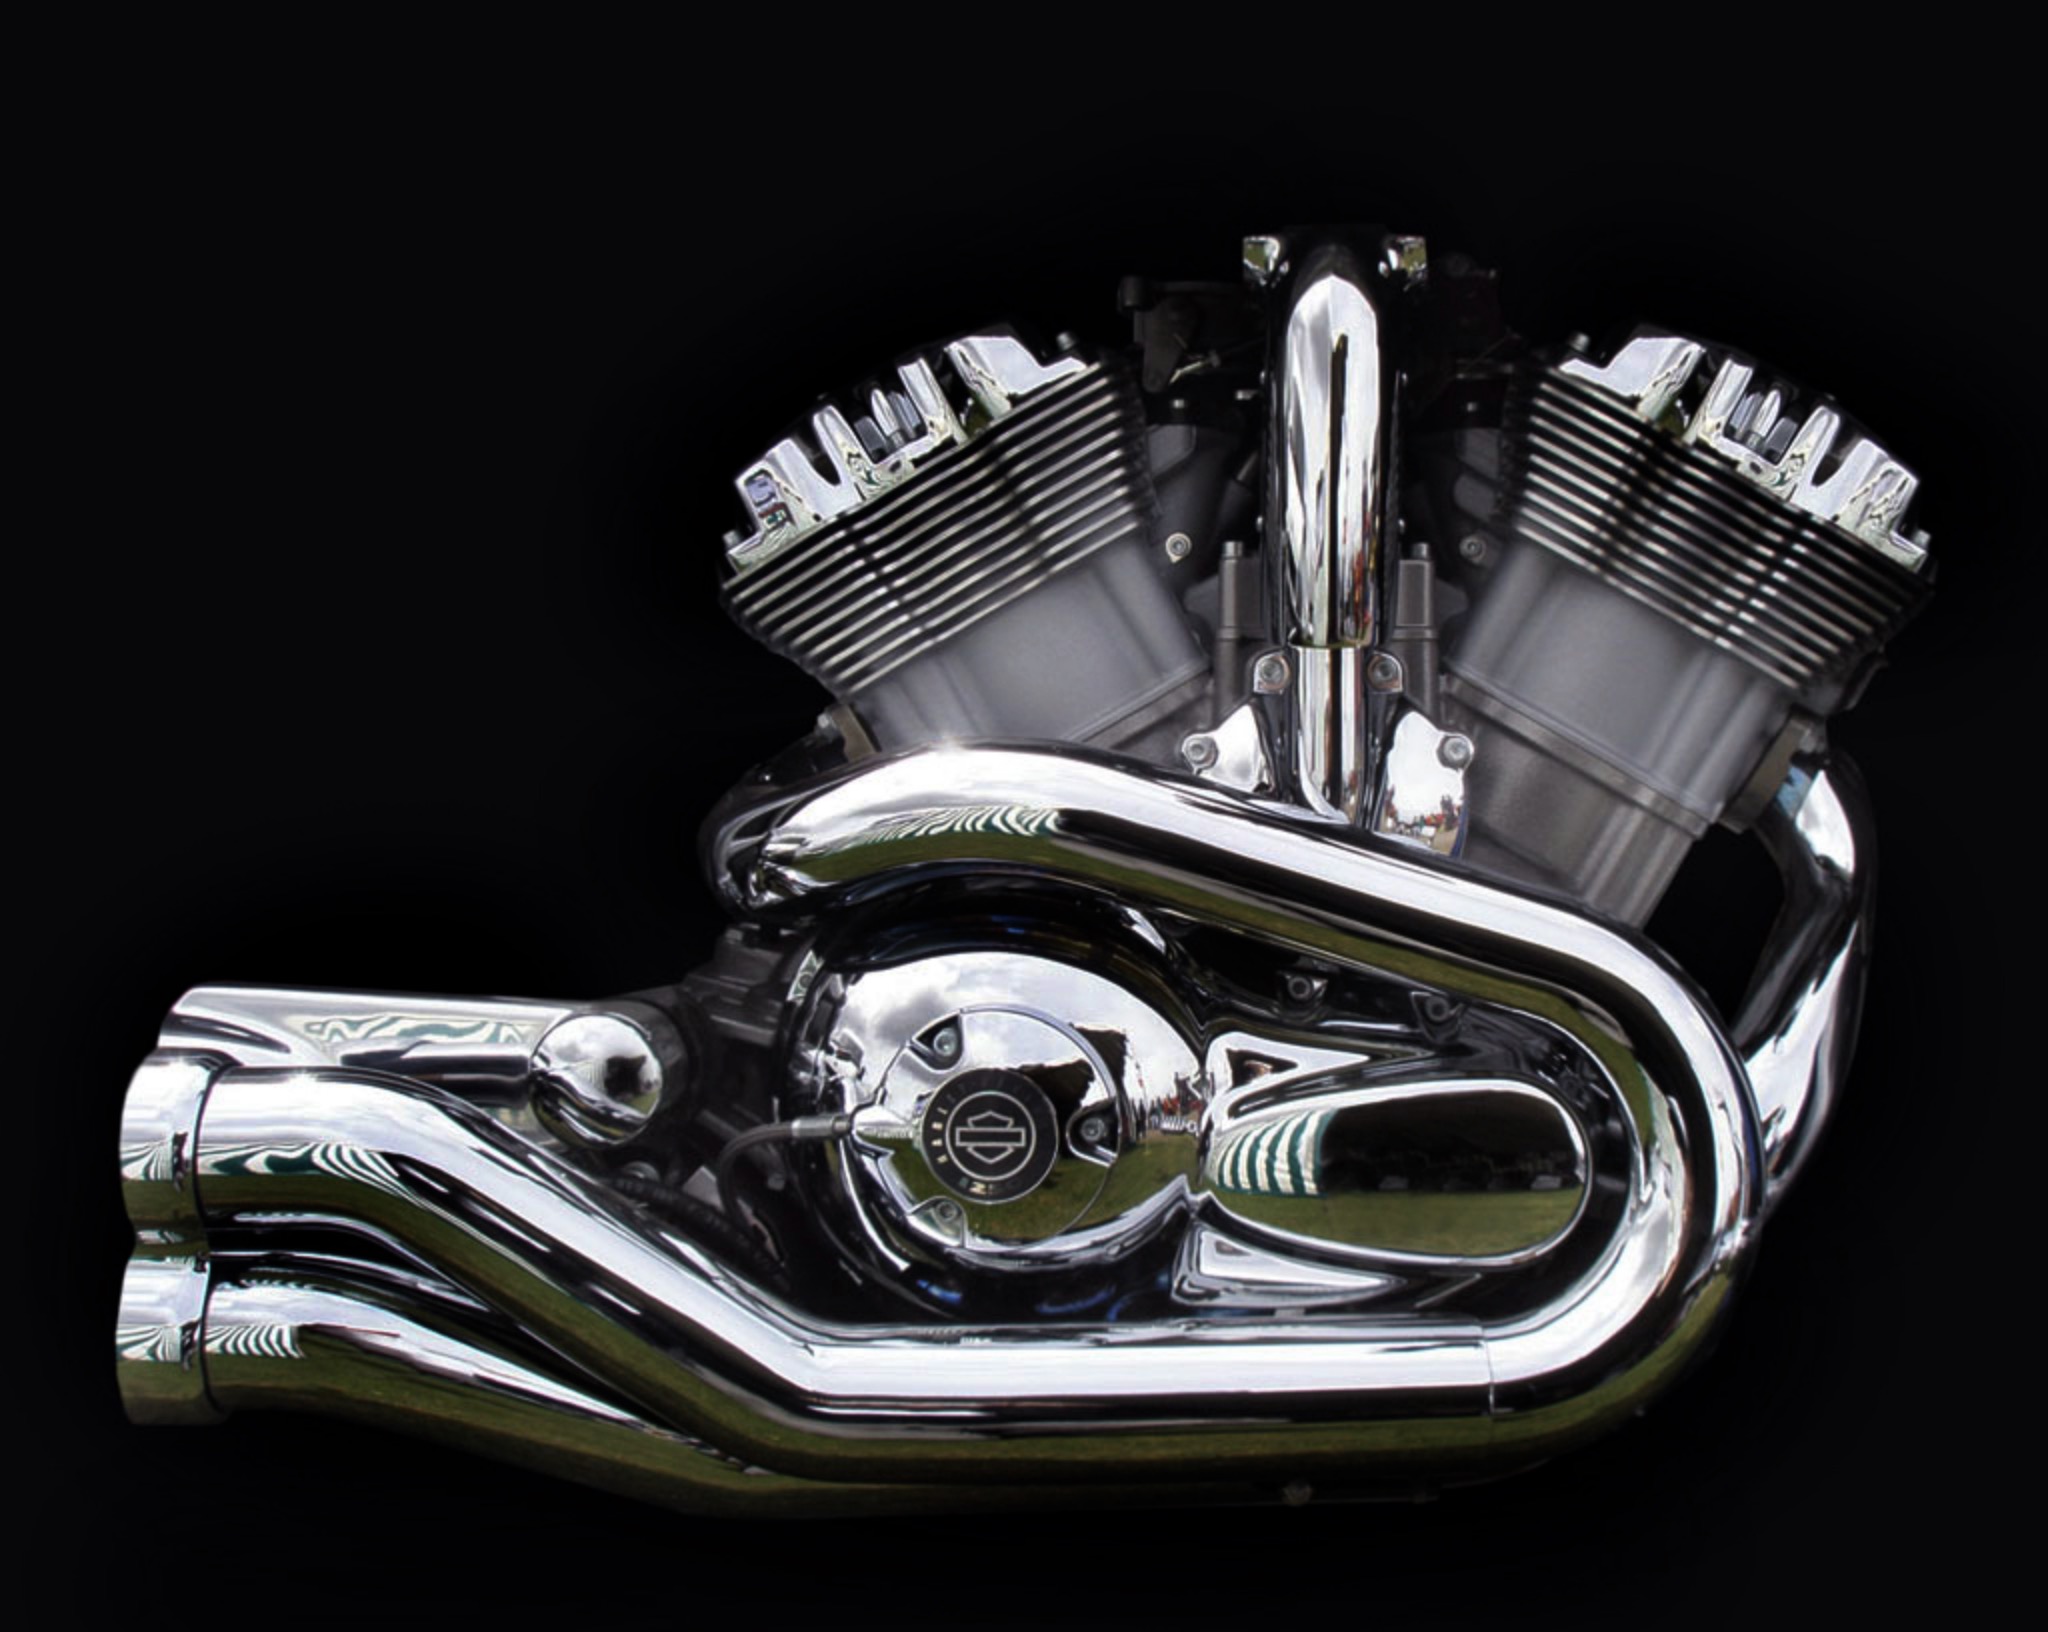 Los motores actuales de Harley-Davidson - Harley Clasica